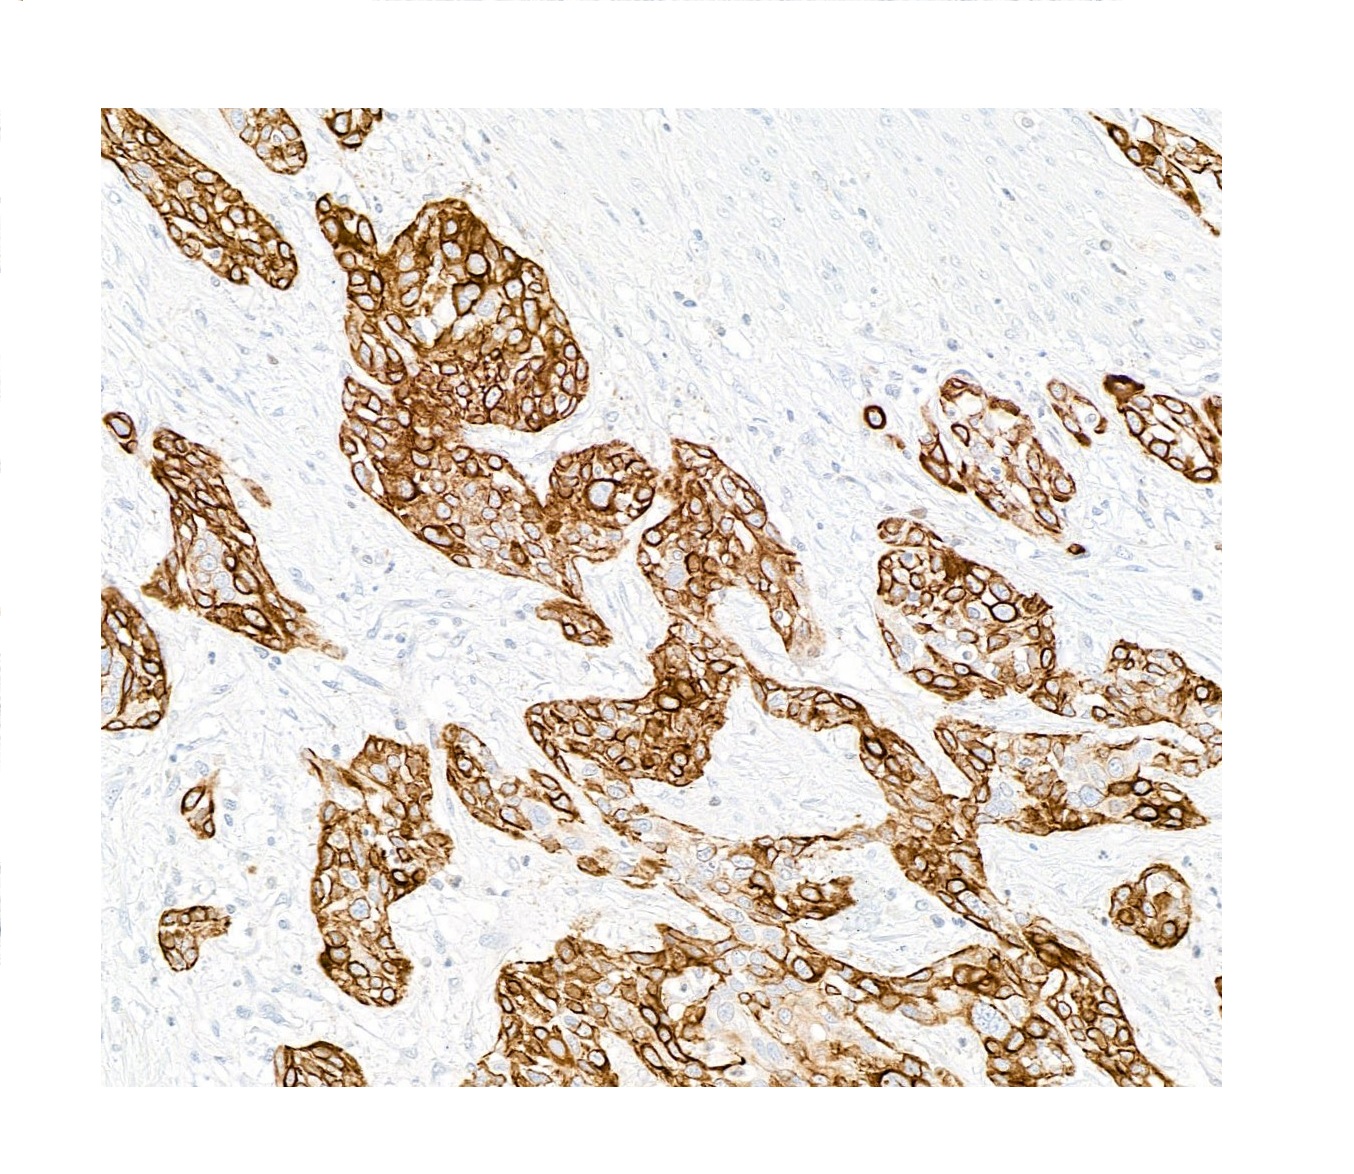 図2. 免疫組織染色像